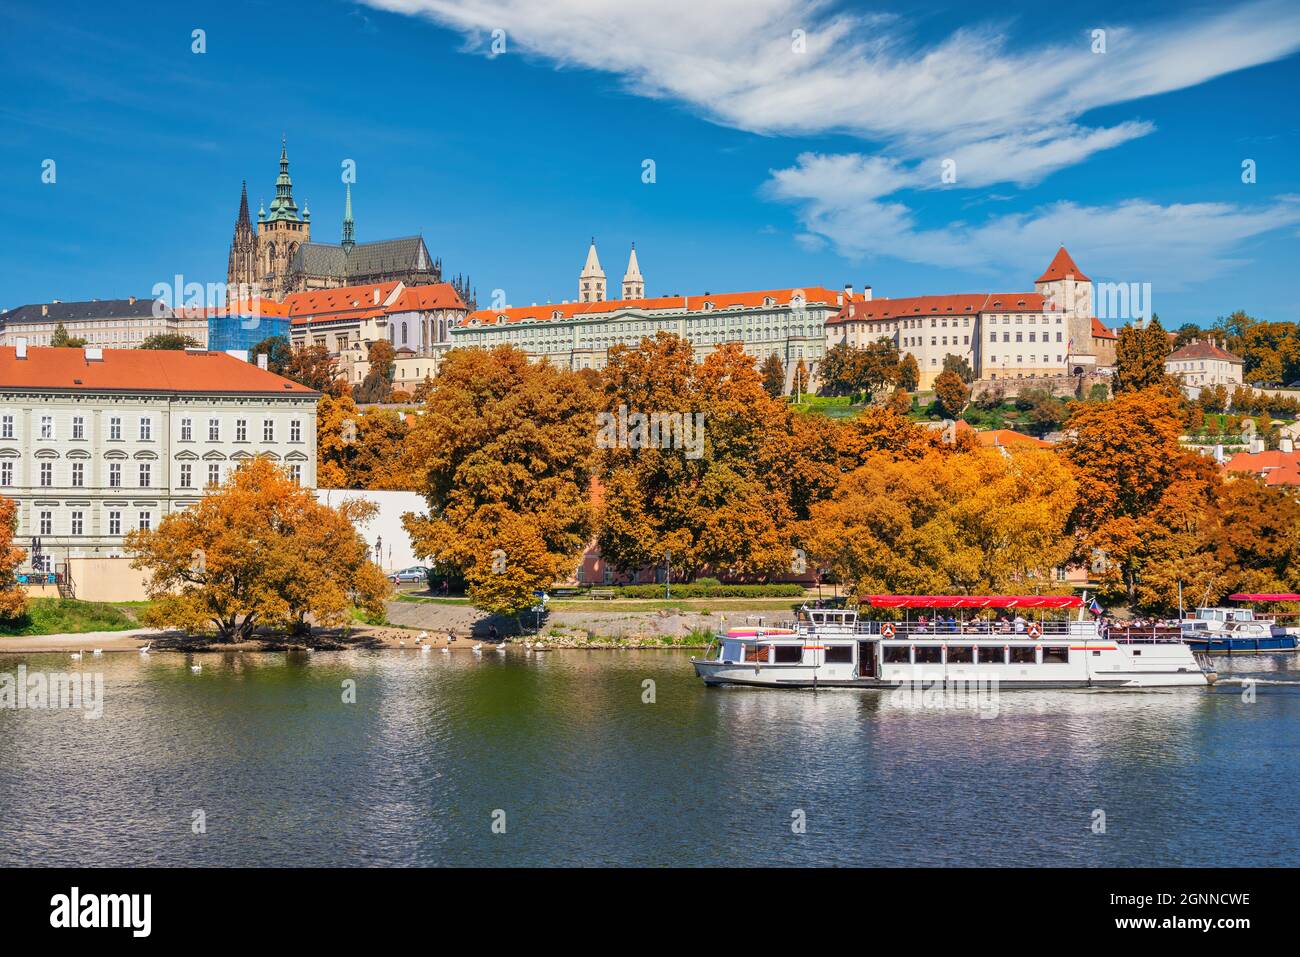 Praga República Checa, el horizonte de la ciudad en el río Vltava y el Castillo de Praga, República Checa con la temporada de follaje de otoño Foto de stock